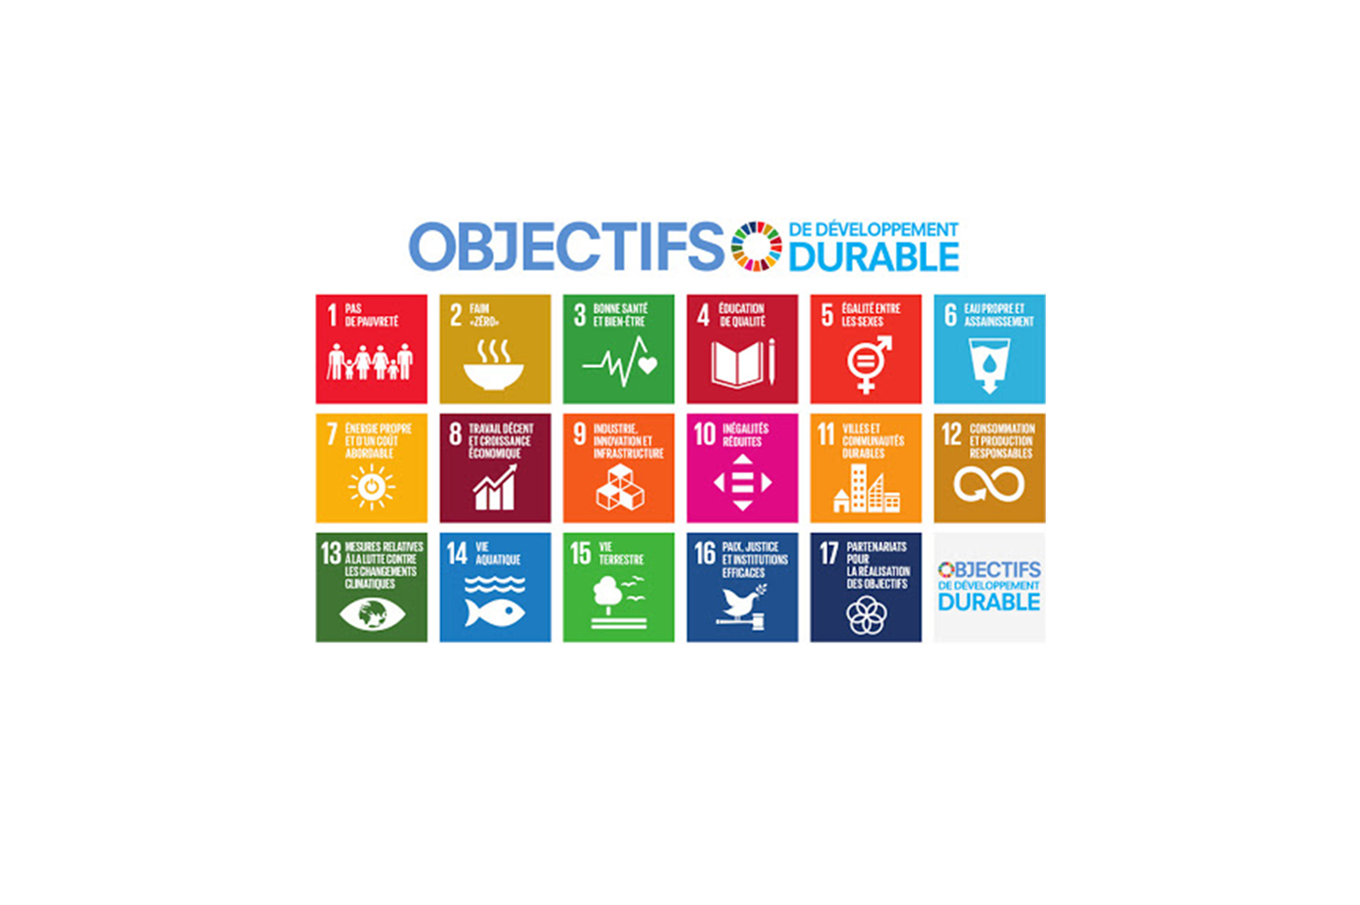 Divers objectifs de développement durable de l'Agenda 2030 sous forme de 17 cases de couleurs